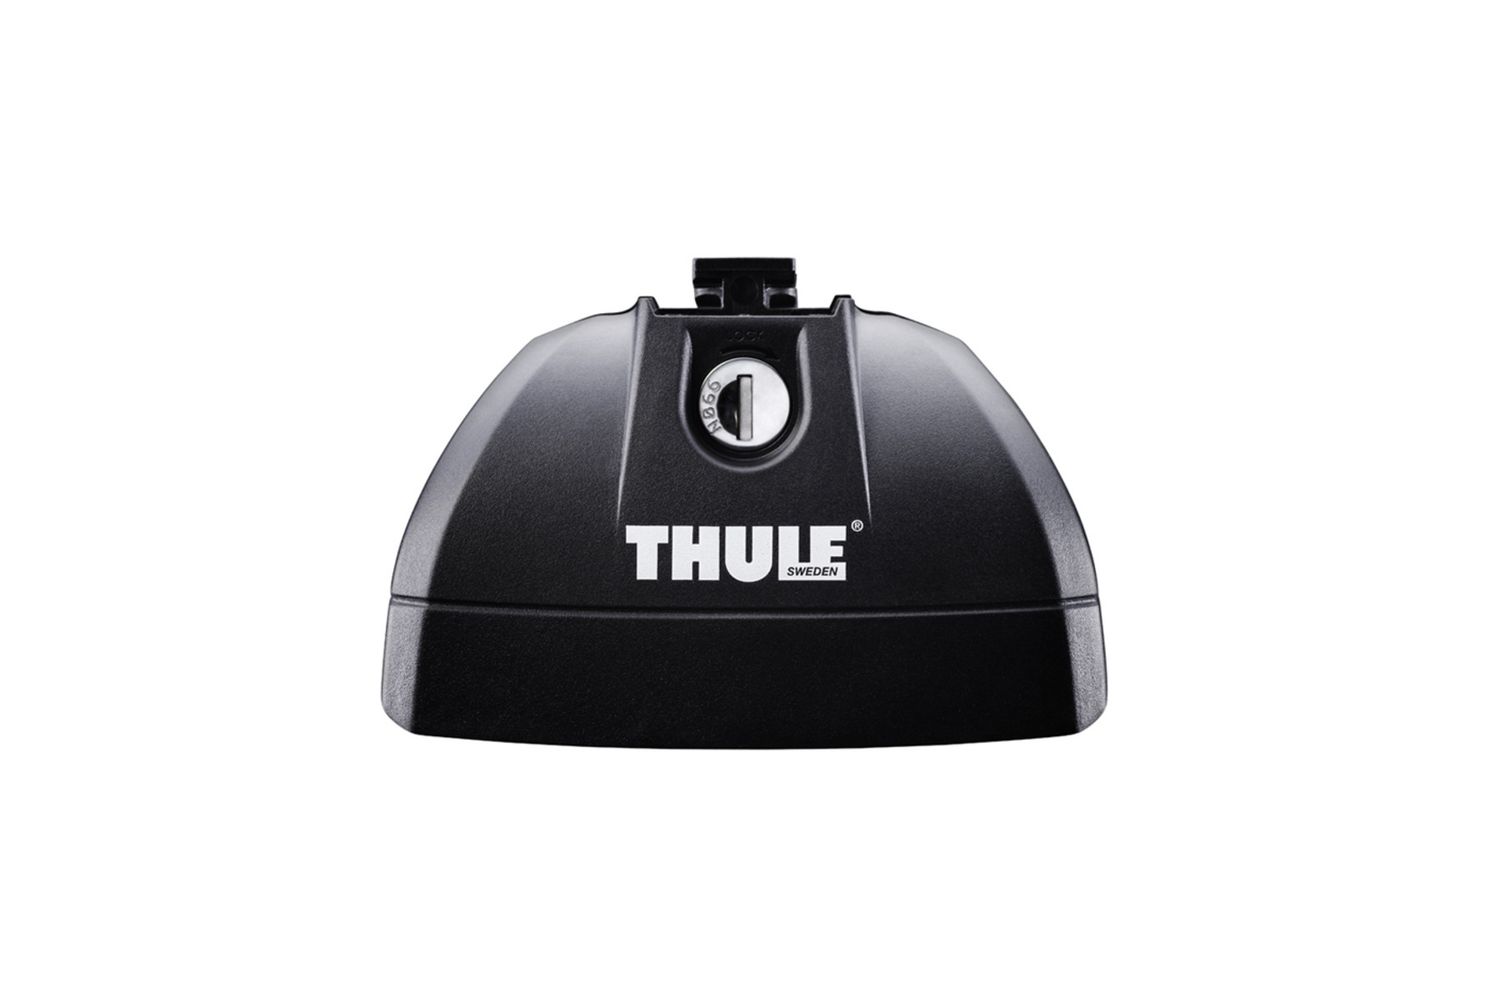 Комплект опор Thule Rapid System для автомобилей со специальными штатными местами (753) борт шаттл thule цвет one color